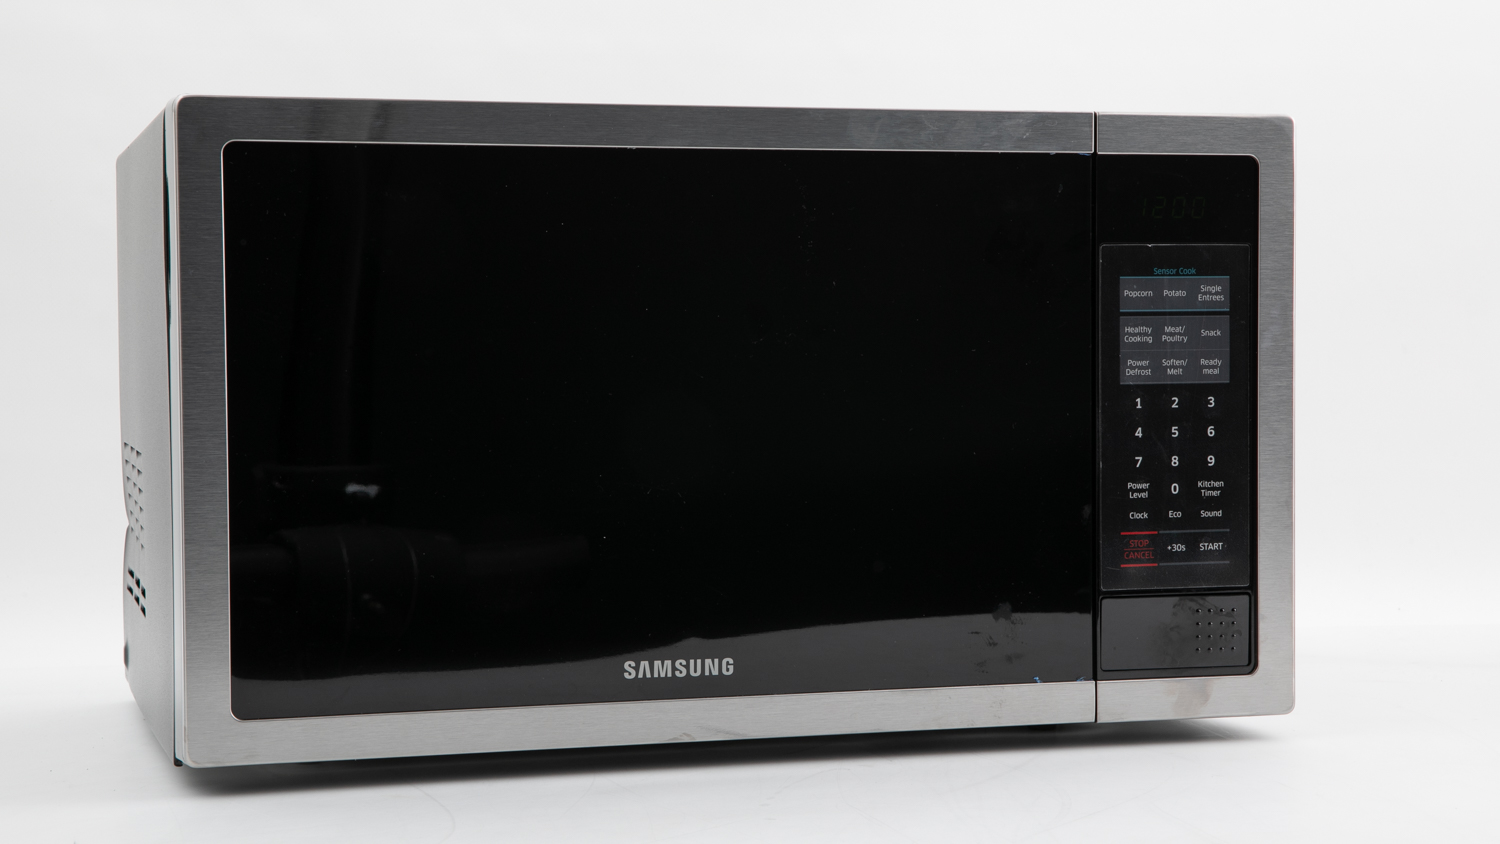 Samsung Smart Sensor Microwave Oven ME6104ST1 carousel image